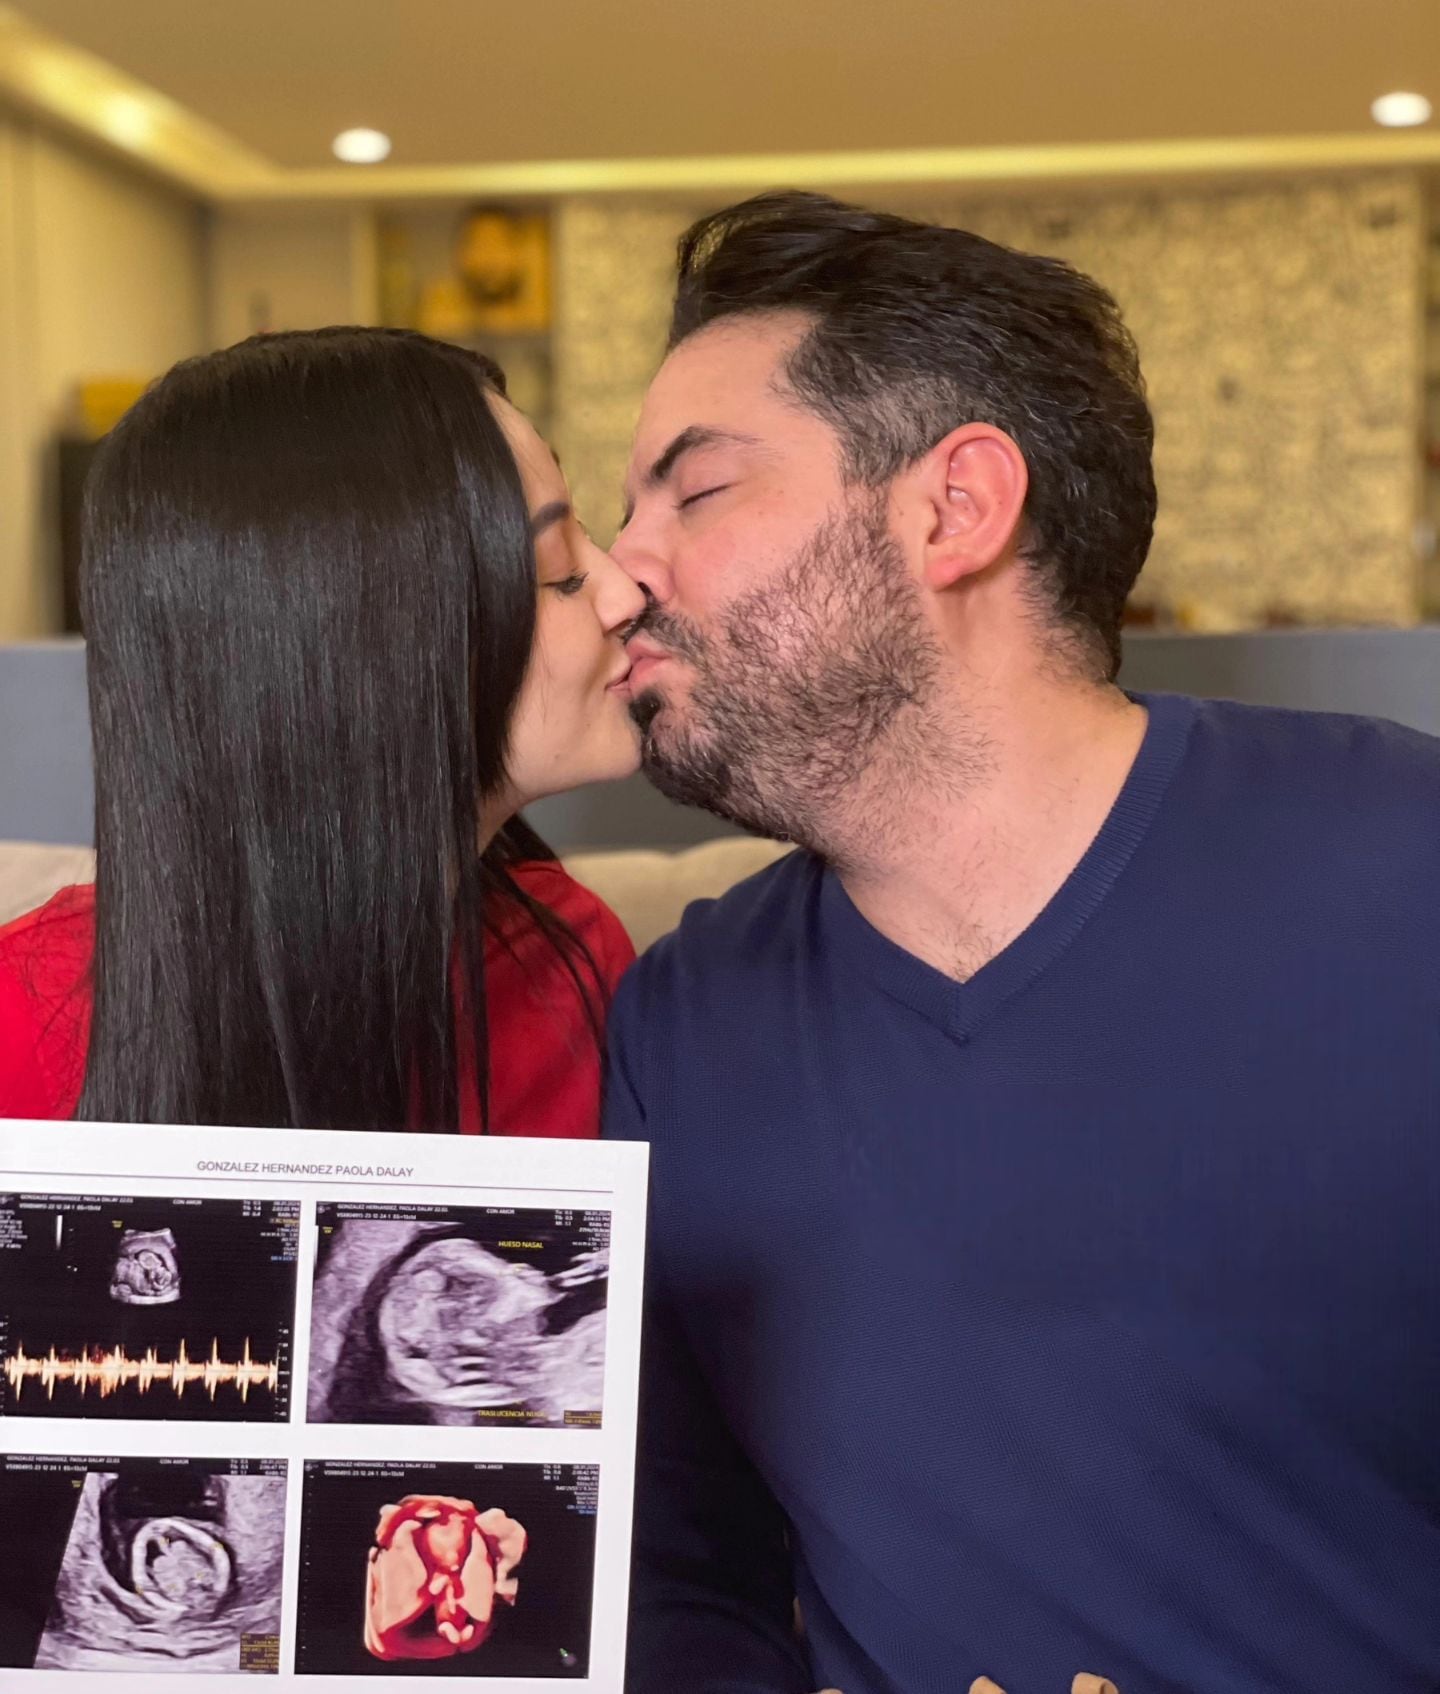 Eugenio Derbez y Paola Dalay han compartido todos los detalles de su embarazo.